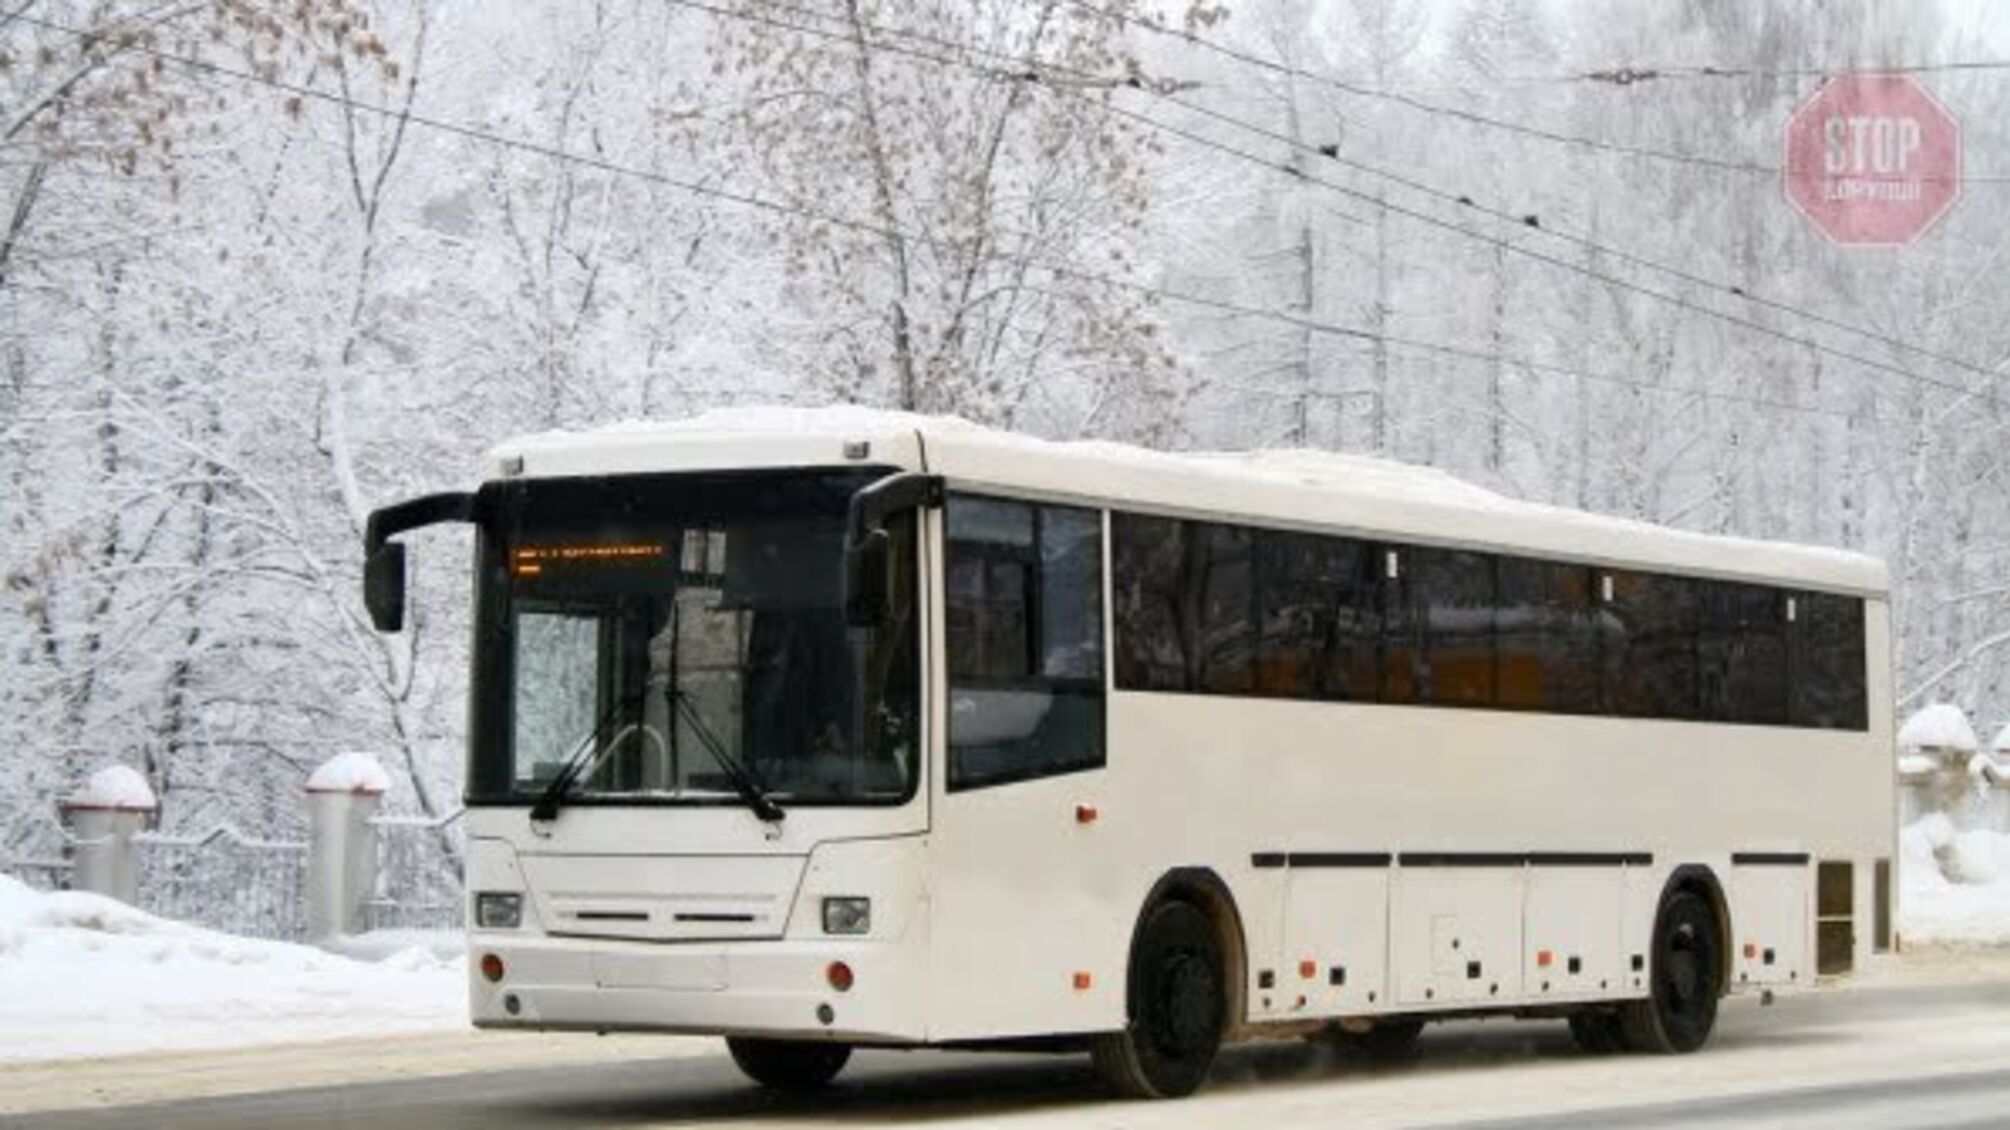 Новости Запорожья: Под городом воспитательница высадила 5-летнюю девочку из автобуса на морозе возле лесополосы